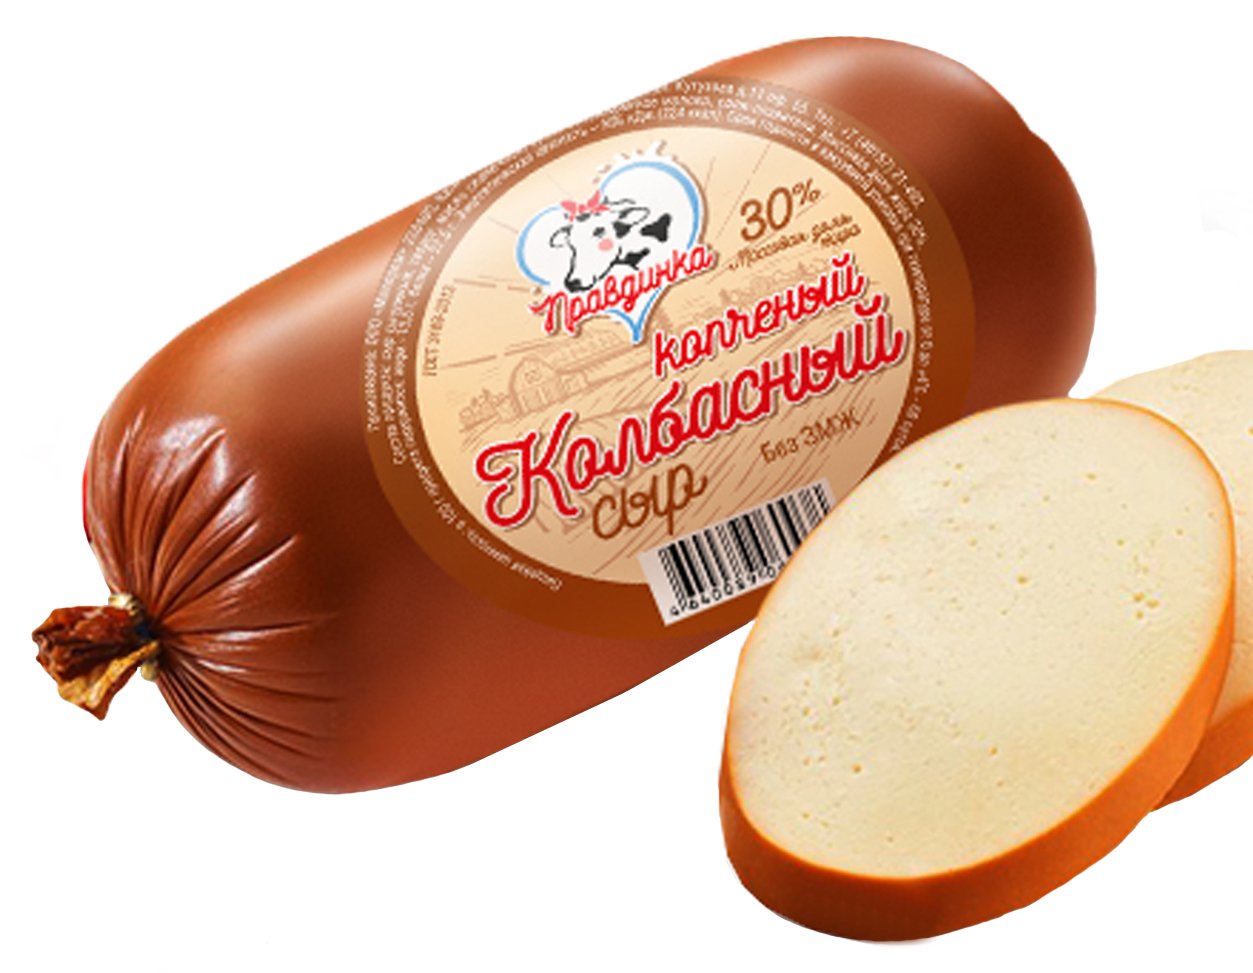 Где Купить Колбасный Белорусский Сыр В Красноярске